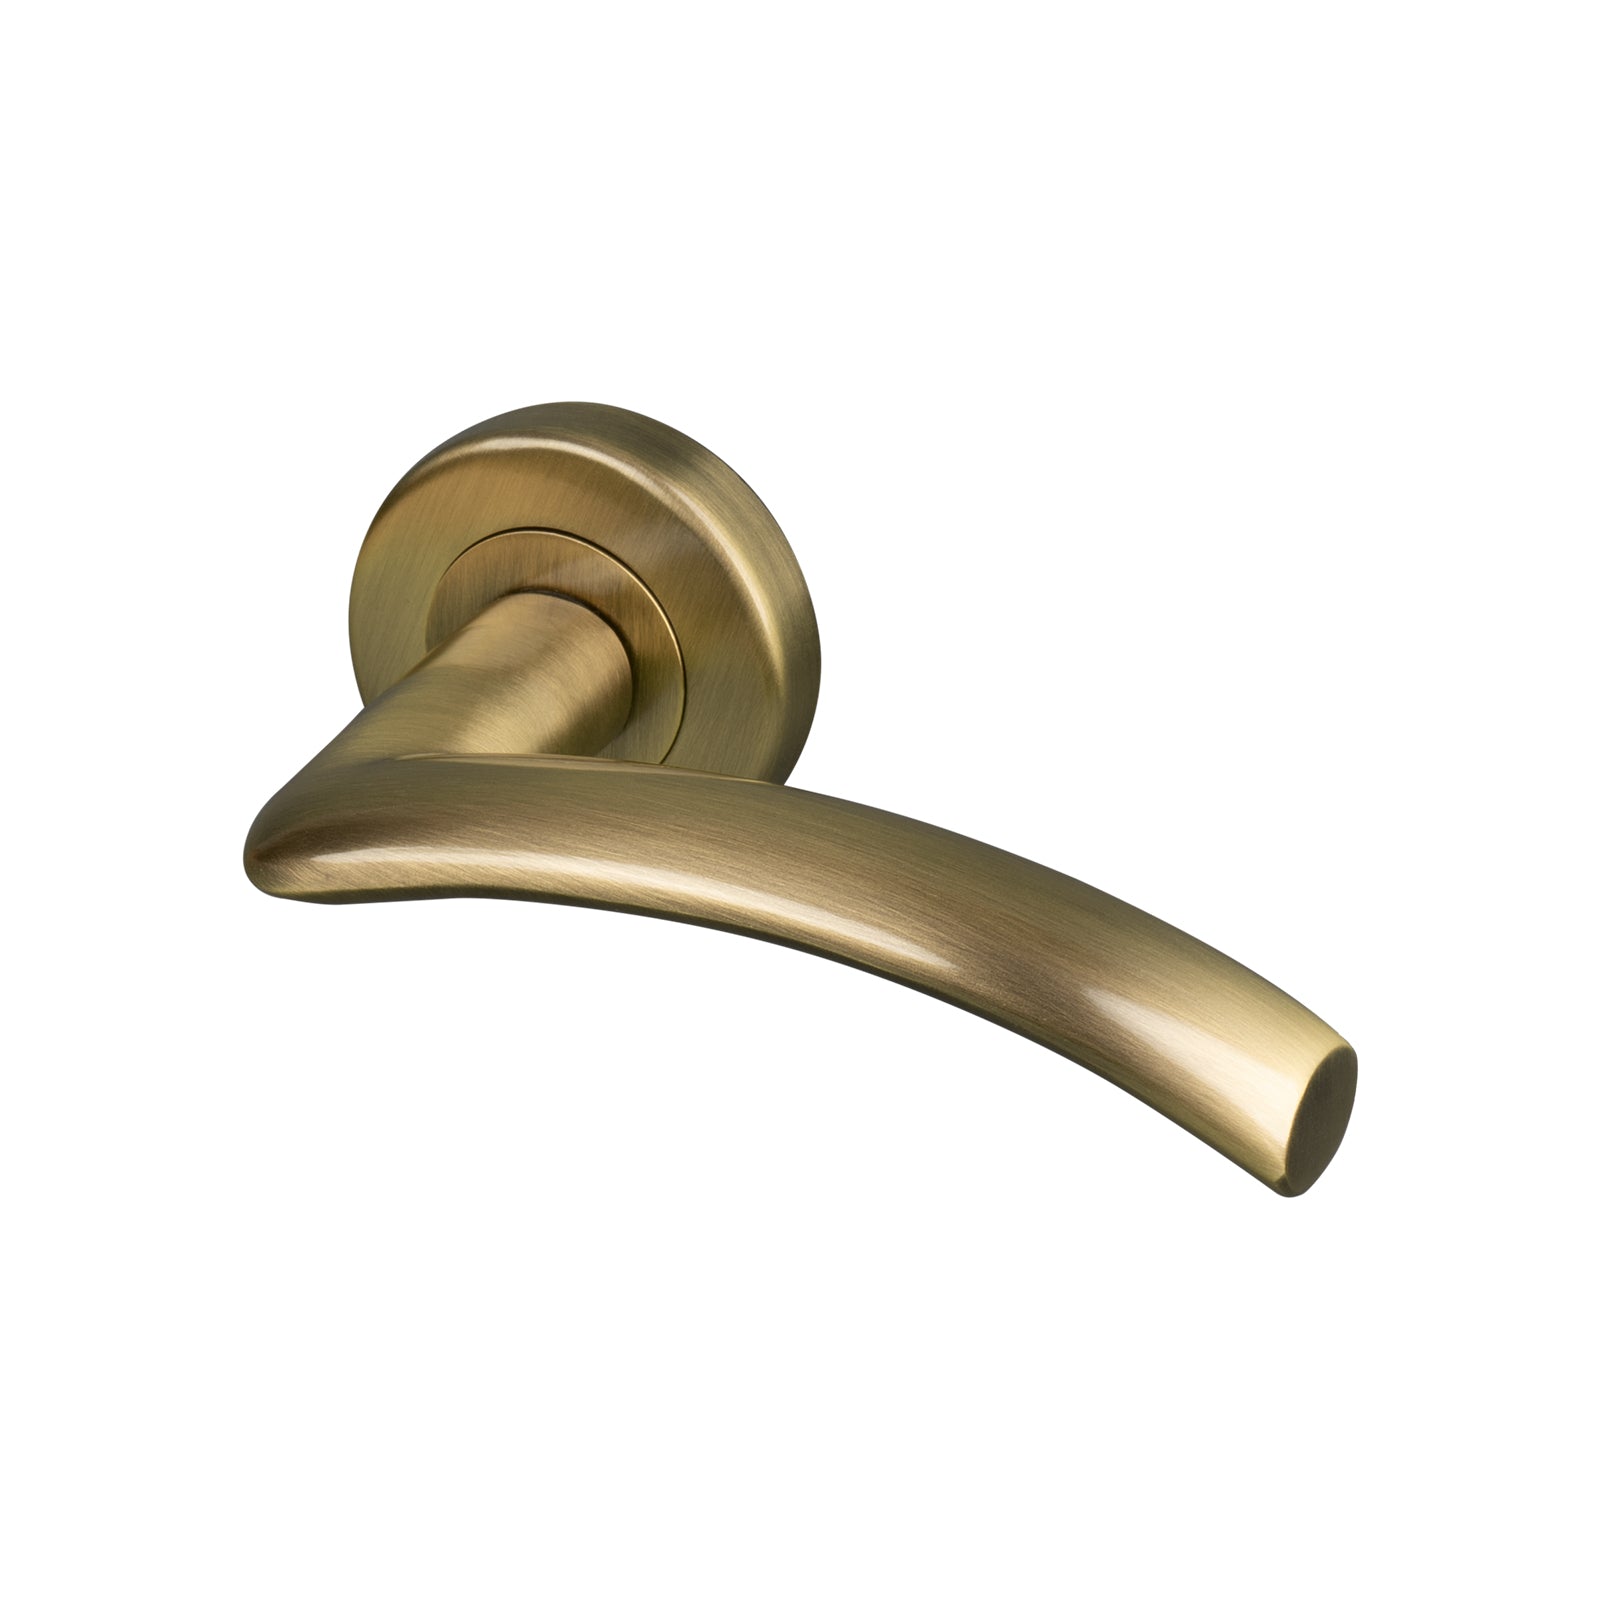 aged brass Centaur round rose door handles, lever on rose handles SHOW